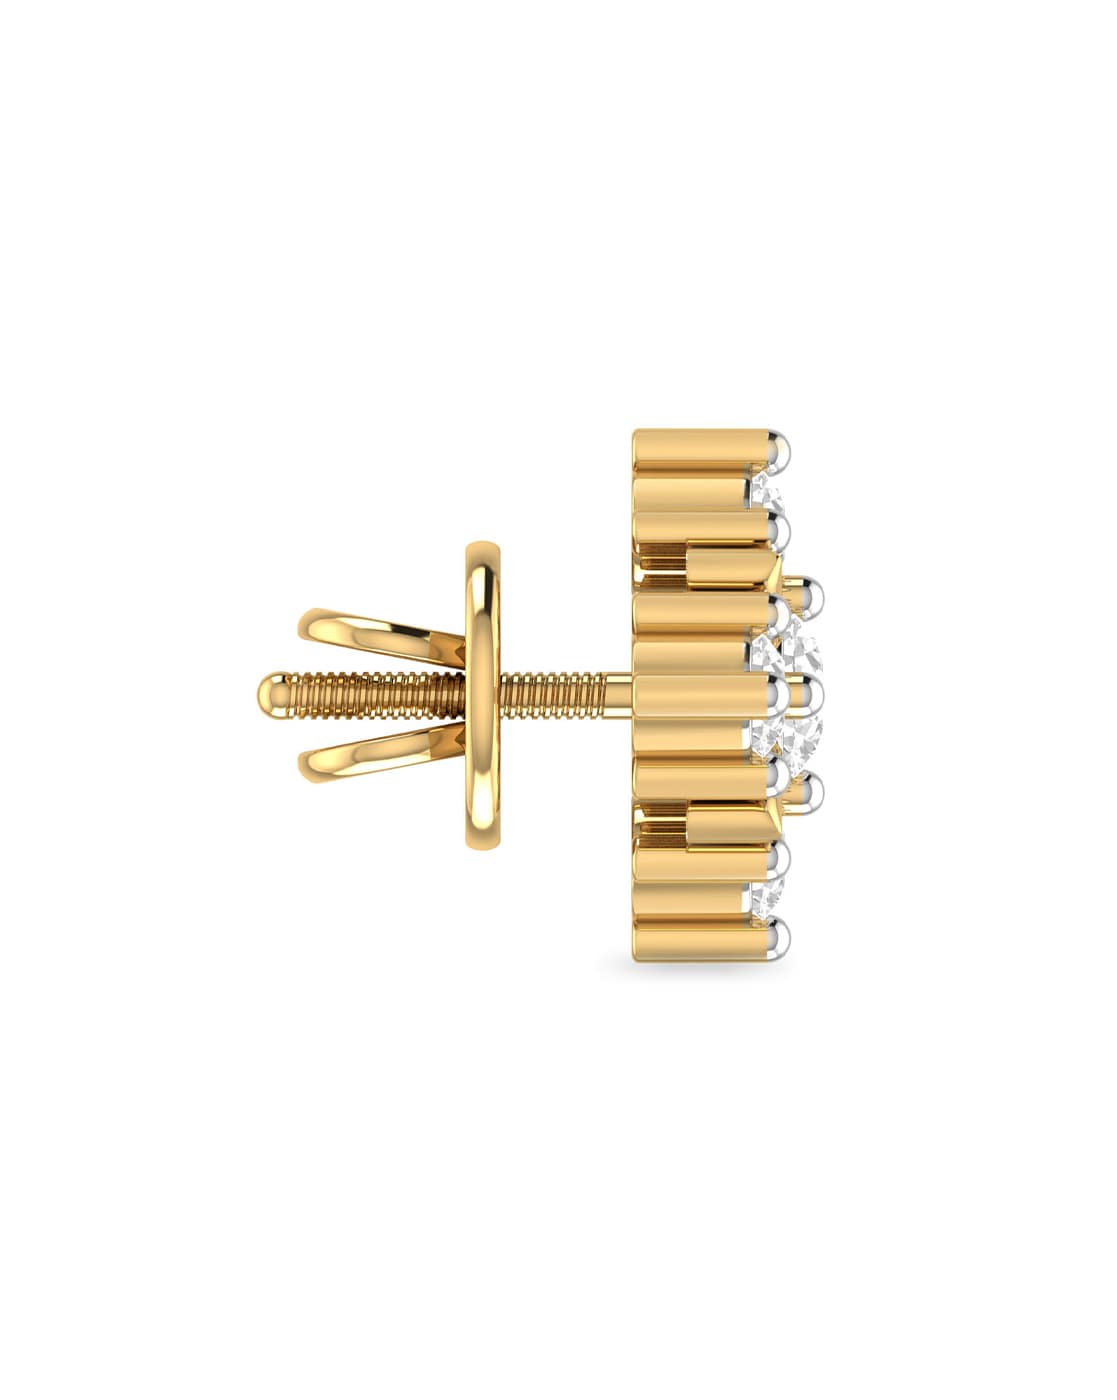 Buy Yellow Gold Earrings for Women by Pc Jeweller Online  Ajiocom